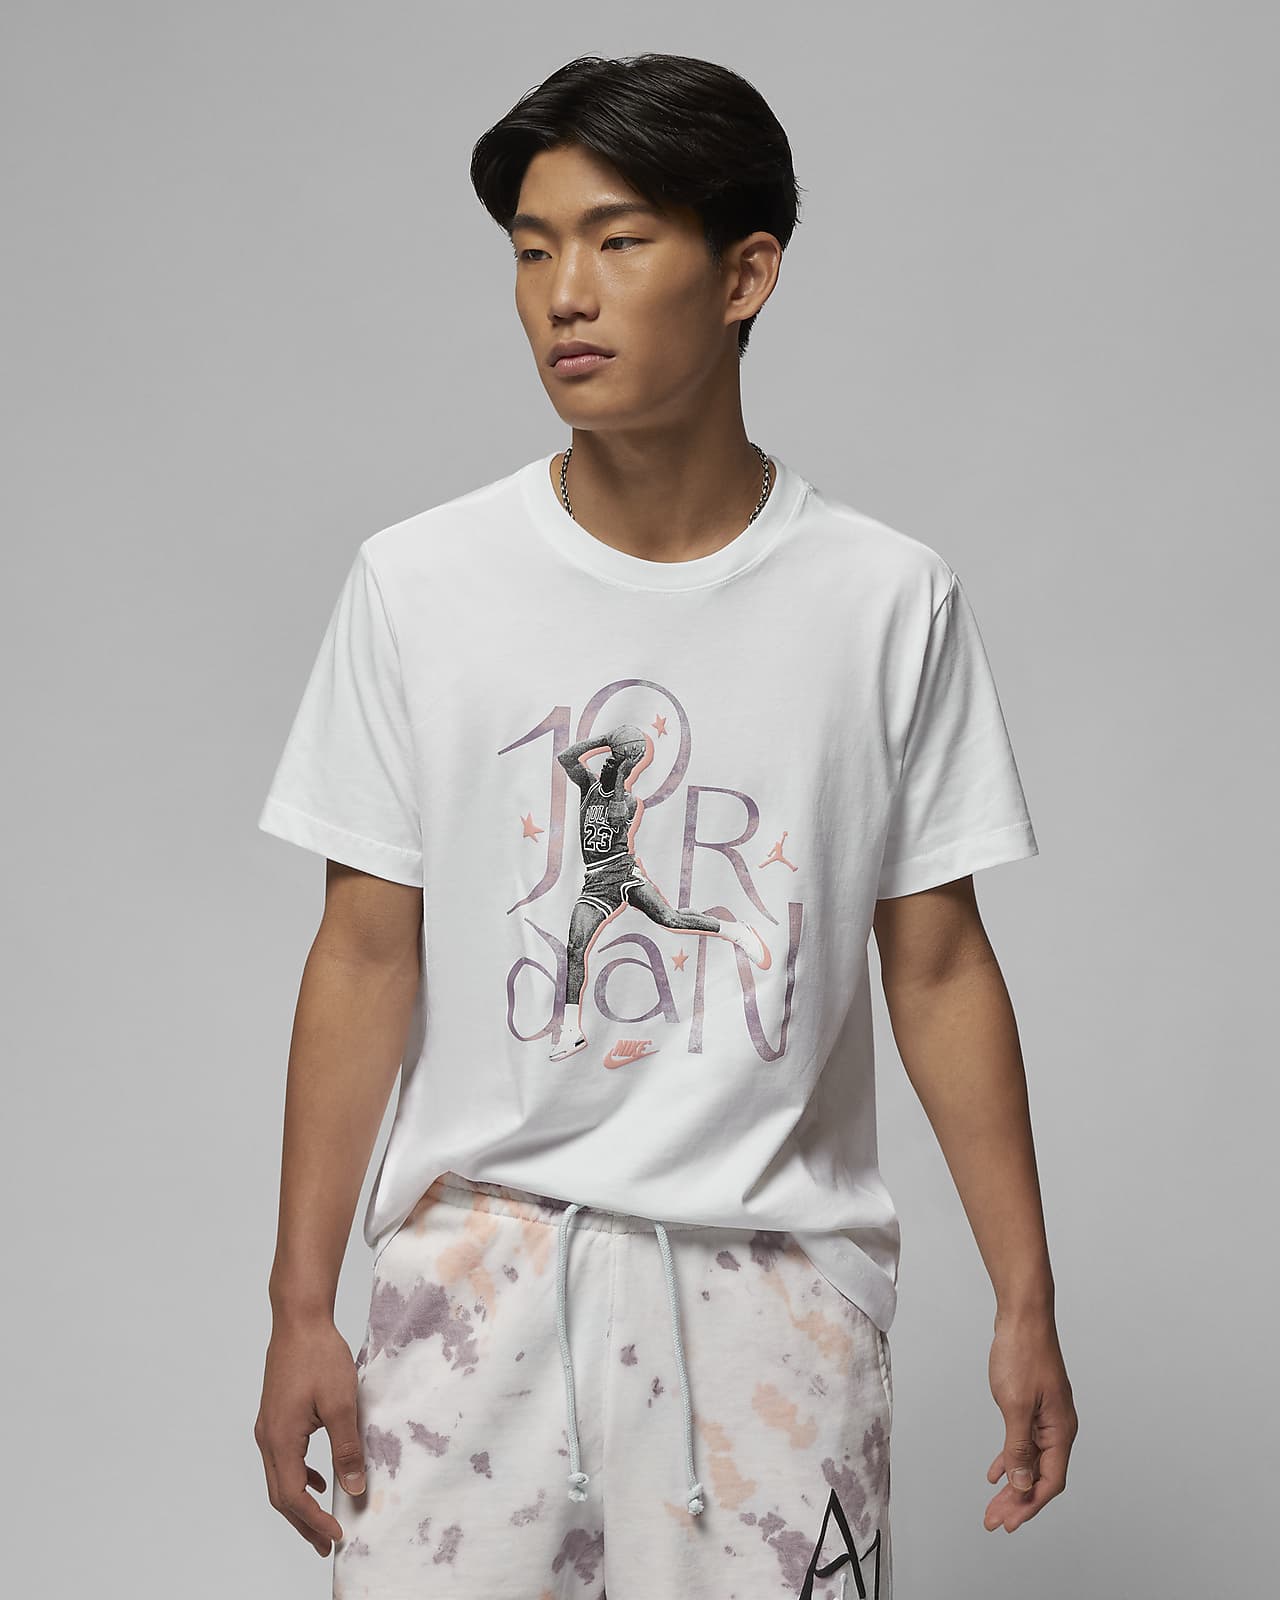 Nike公式 ジョーダン スポーツ Dna メンズ グラフィック Tシャツ オンラインストア 通販サイト